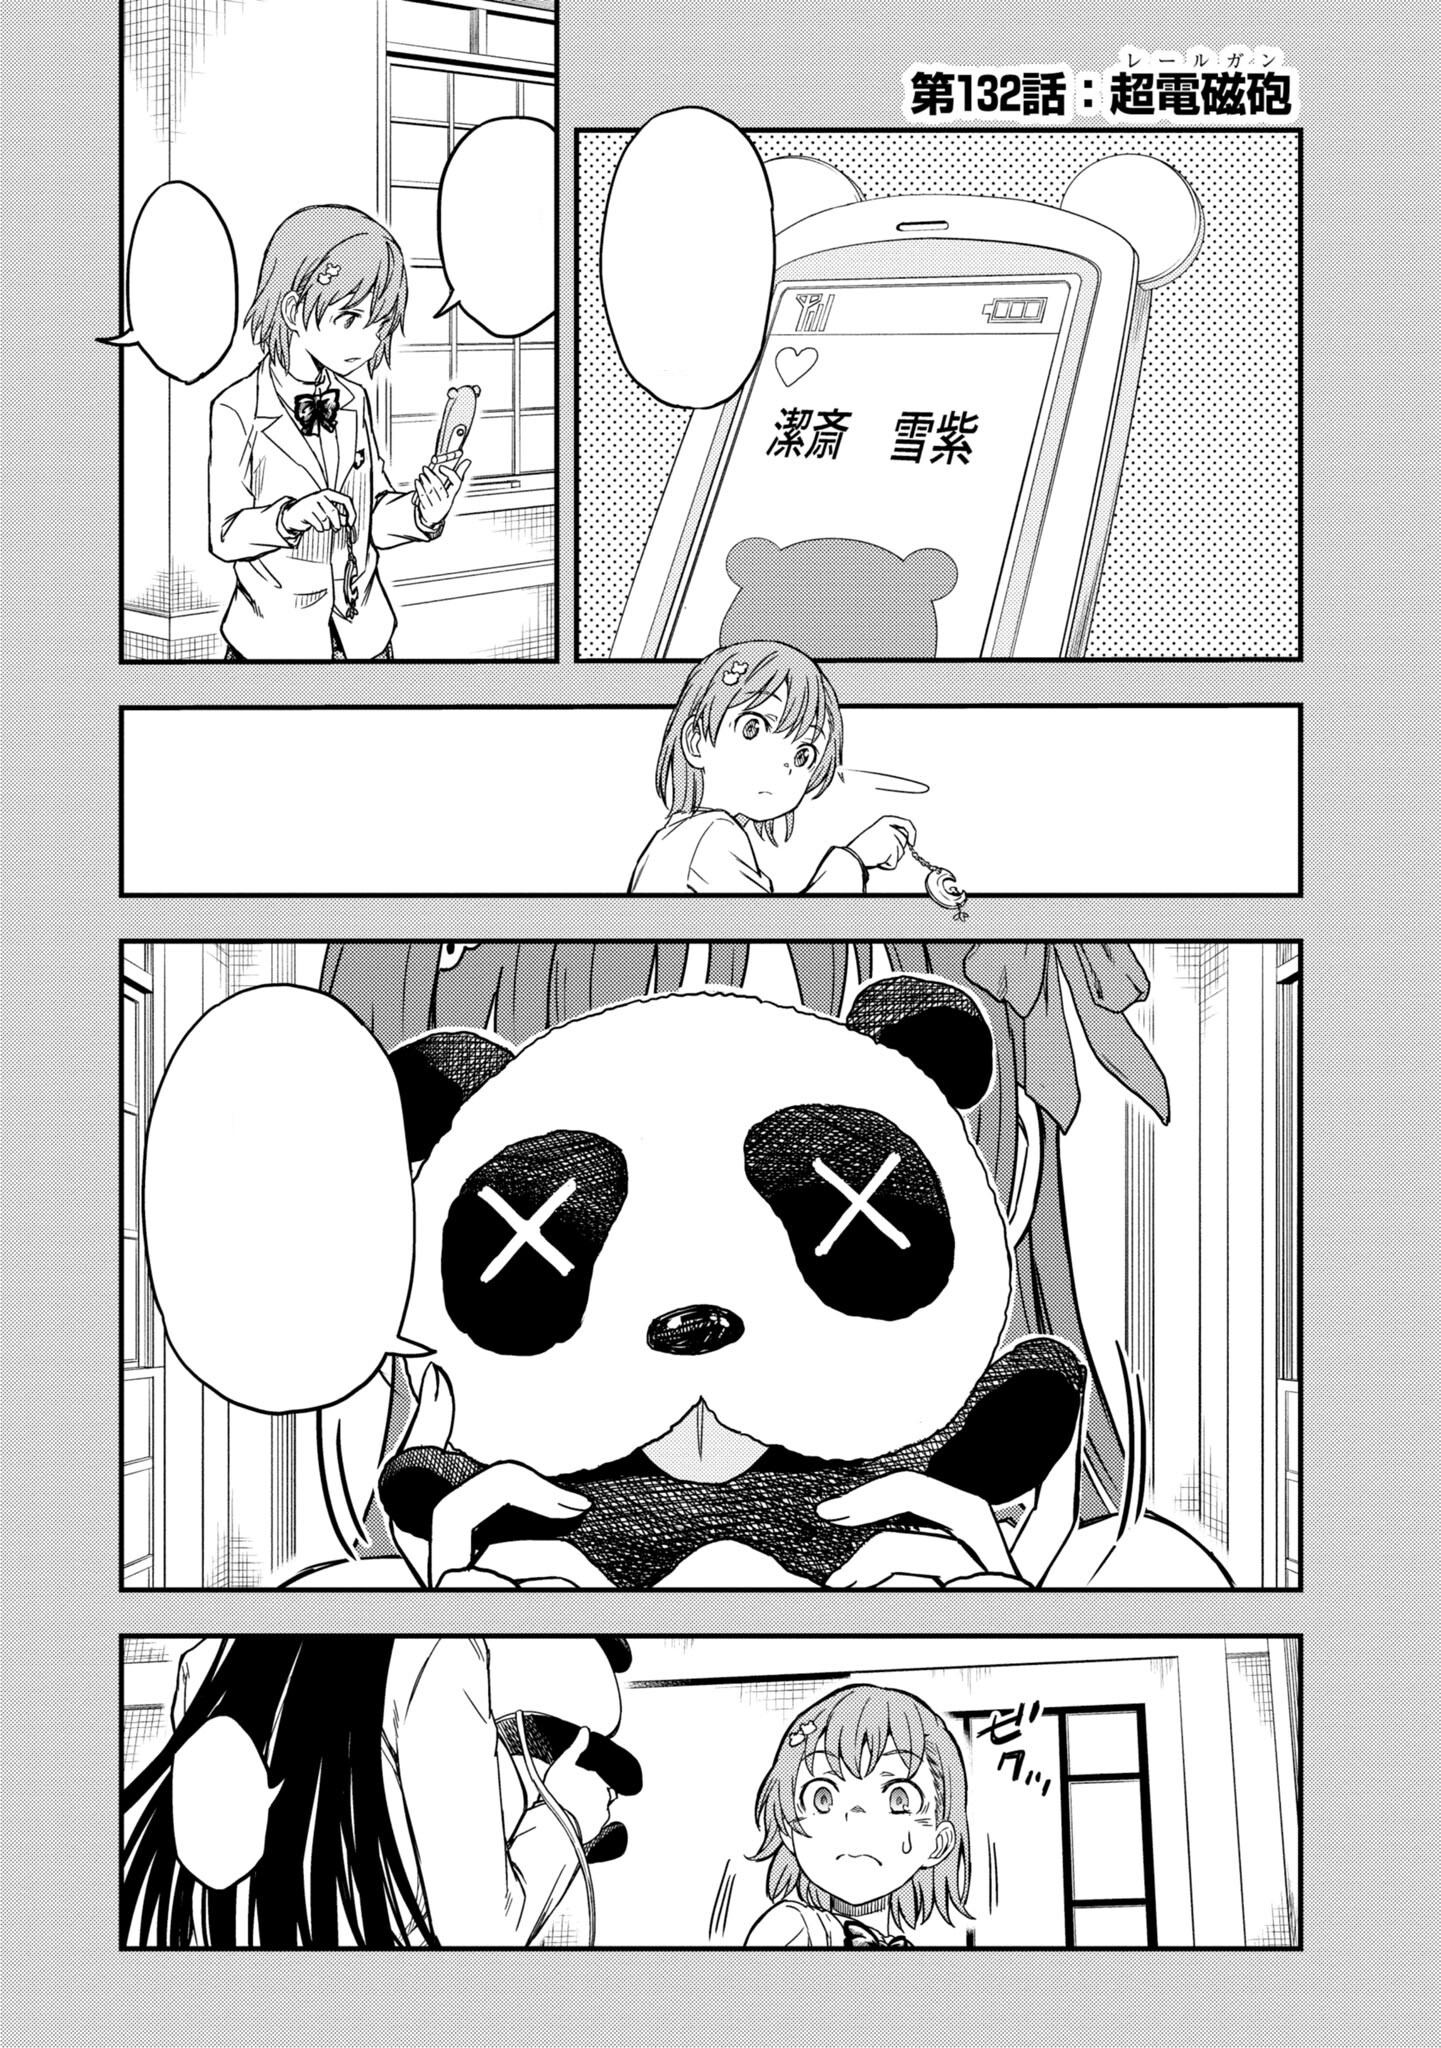 Toaru Kagaku No Railgun Manga Chapter 132 Toaru Majutsu No Index Wiki Fandom